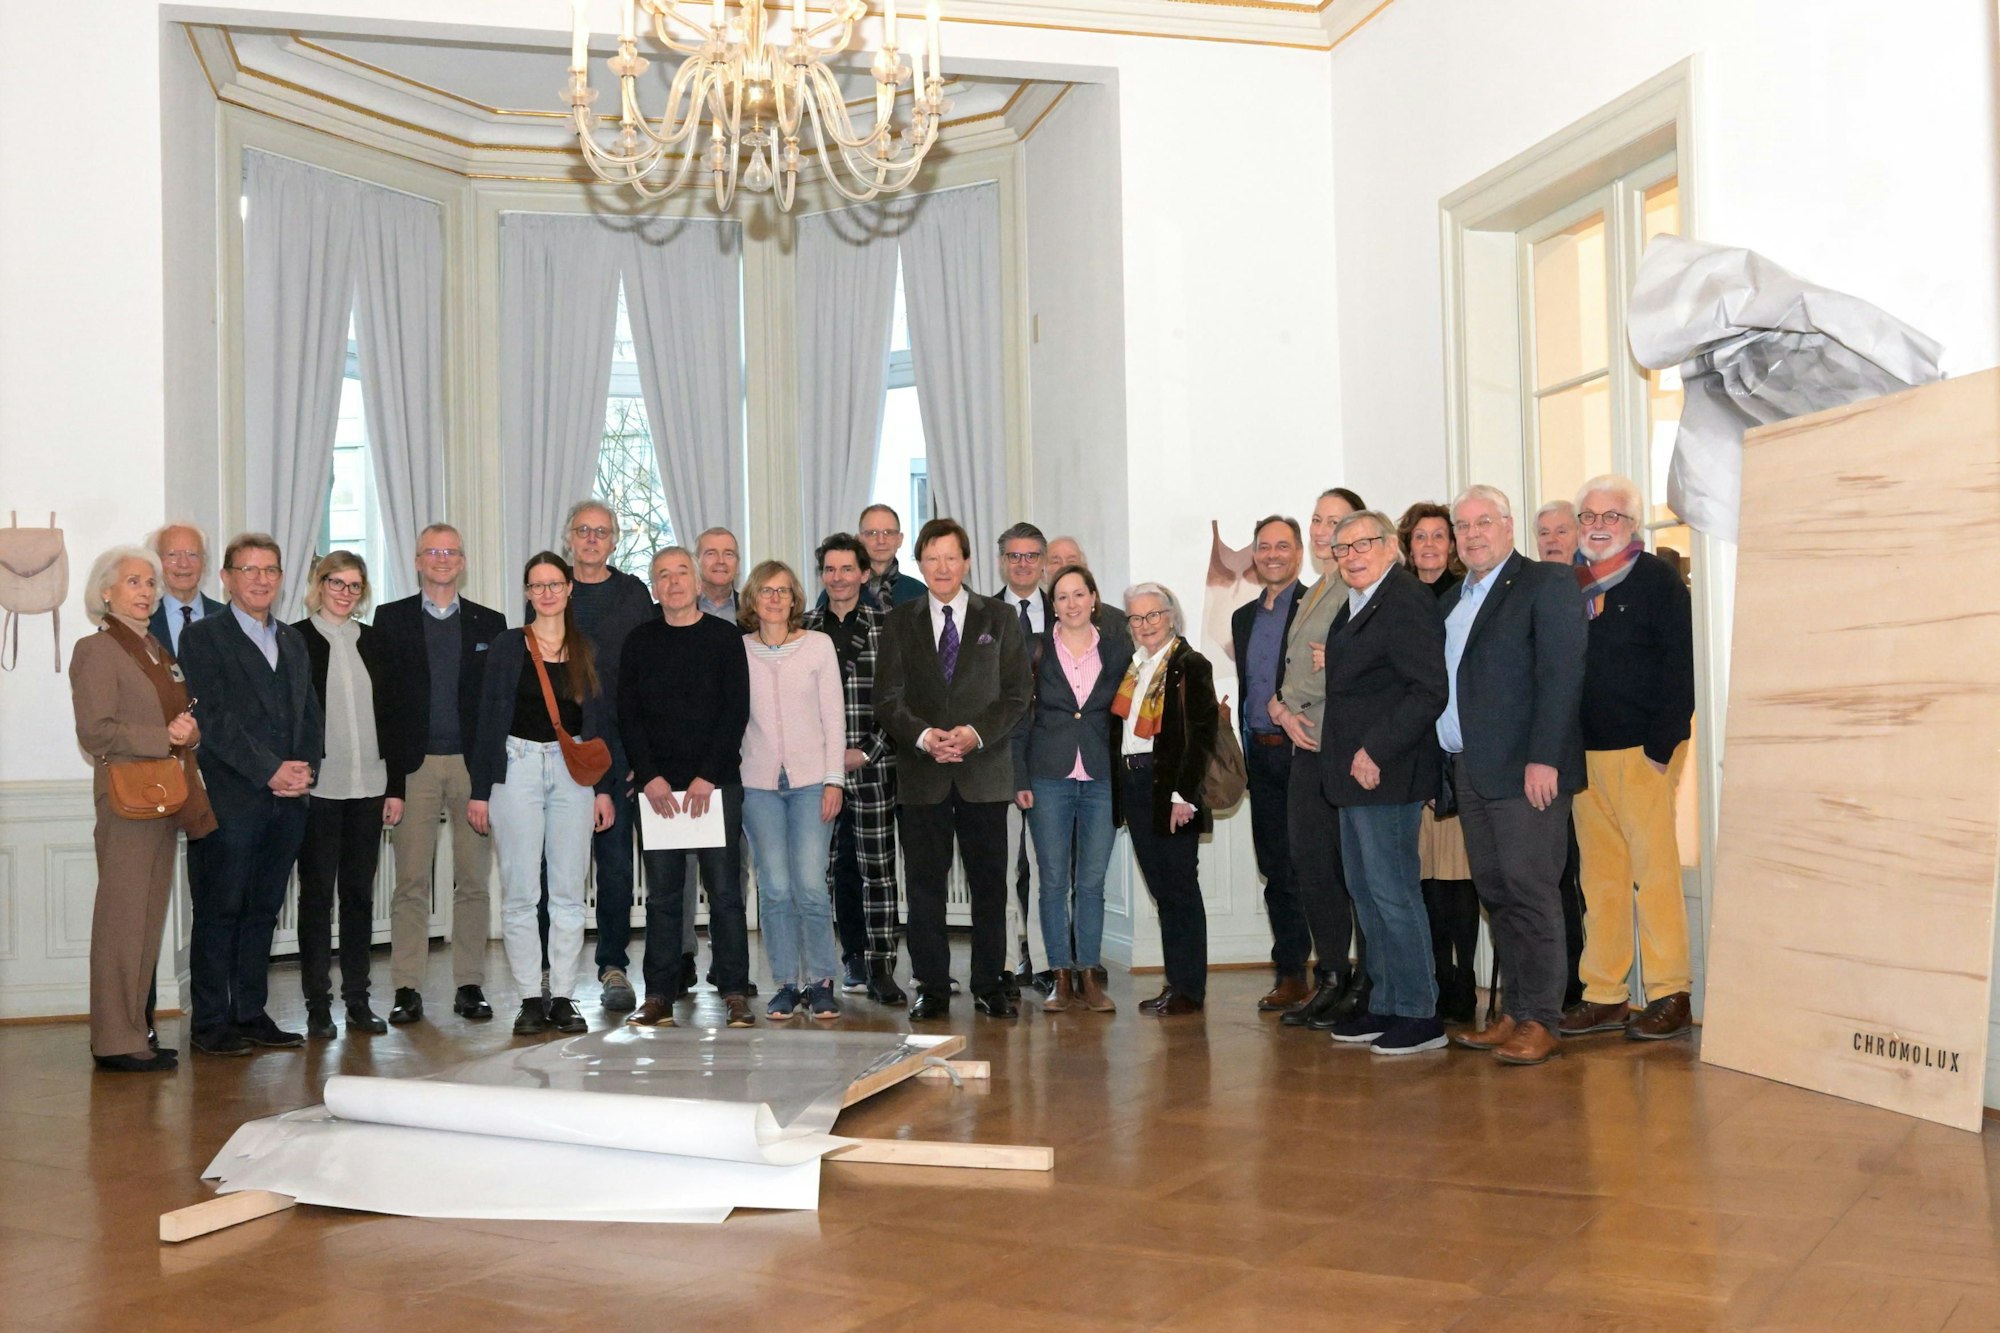 Mitglieder des Vereins Galerie und Schloss und des Rotary-Clubs freuten sich über die Werke von Darja Eßer (6. v. l.) und Michael Wittassek (8. v. l.) – zusammen mit Vertretern der Stadt Bergisch Gladbach.